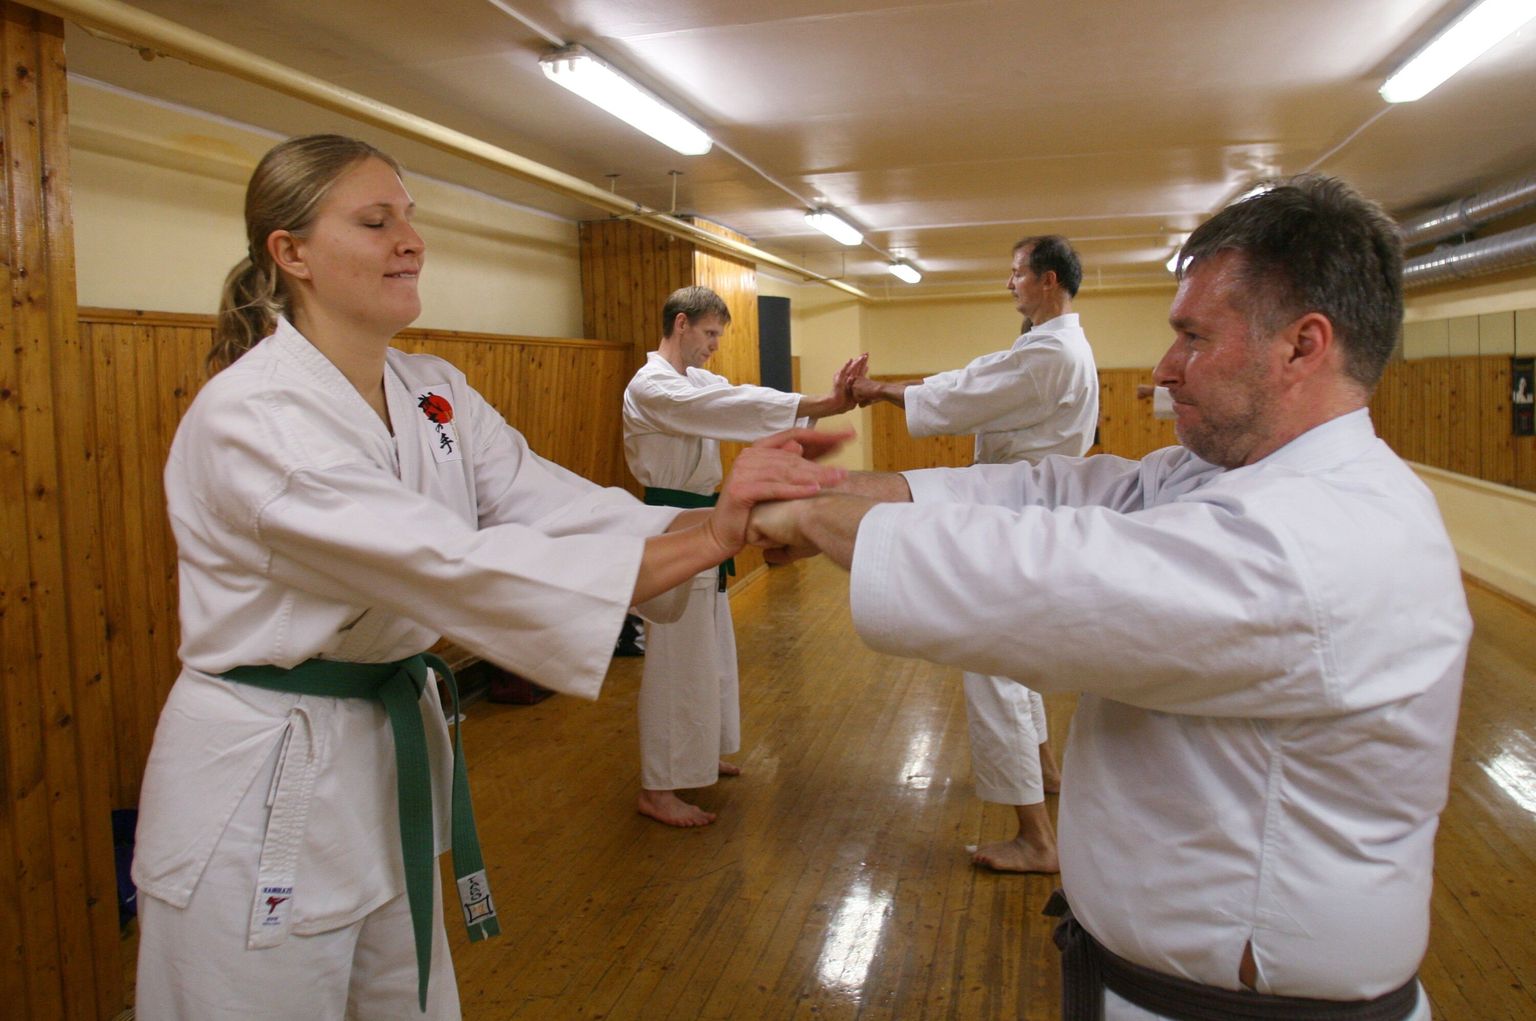 Tartu Karateklubi Shotokan karate treening. Liisi Laasik (vaskaul) ja Tanel Muul.